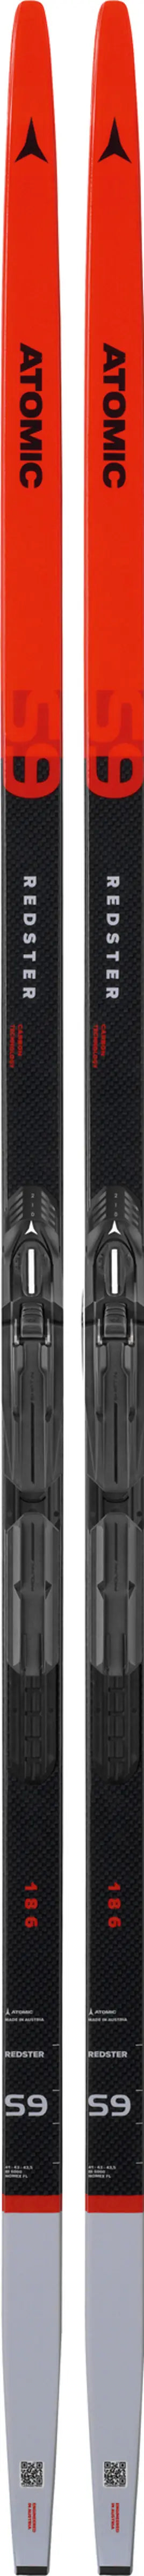 Atomic Redster S9 Carbon - Skate Ski 22-23